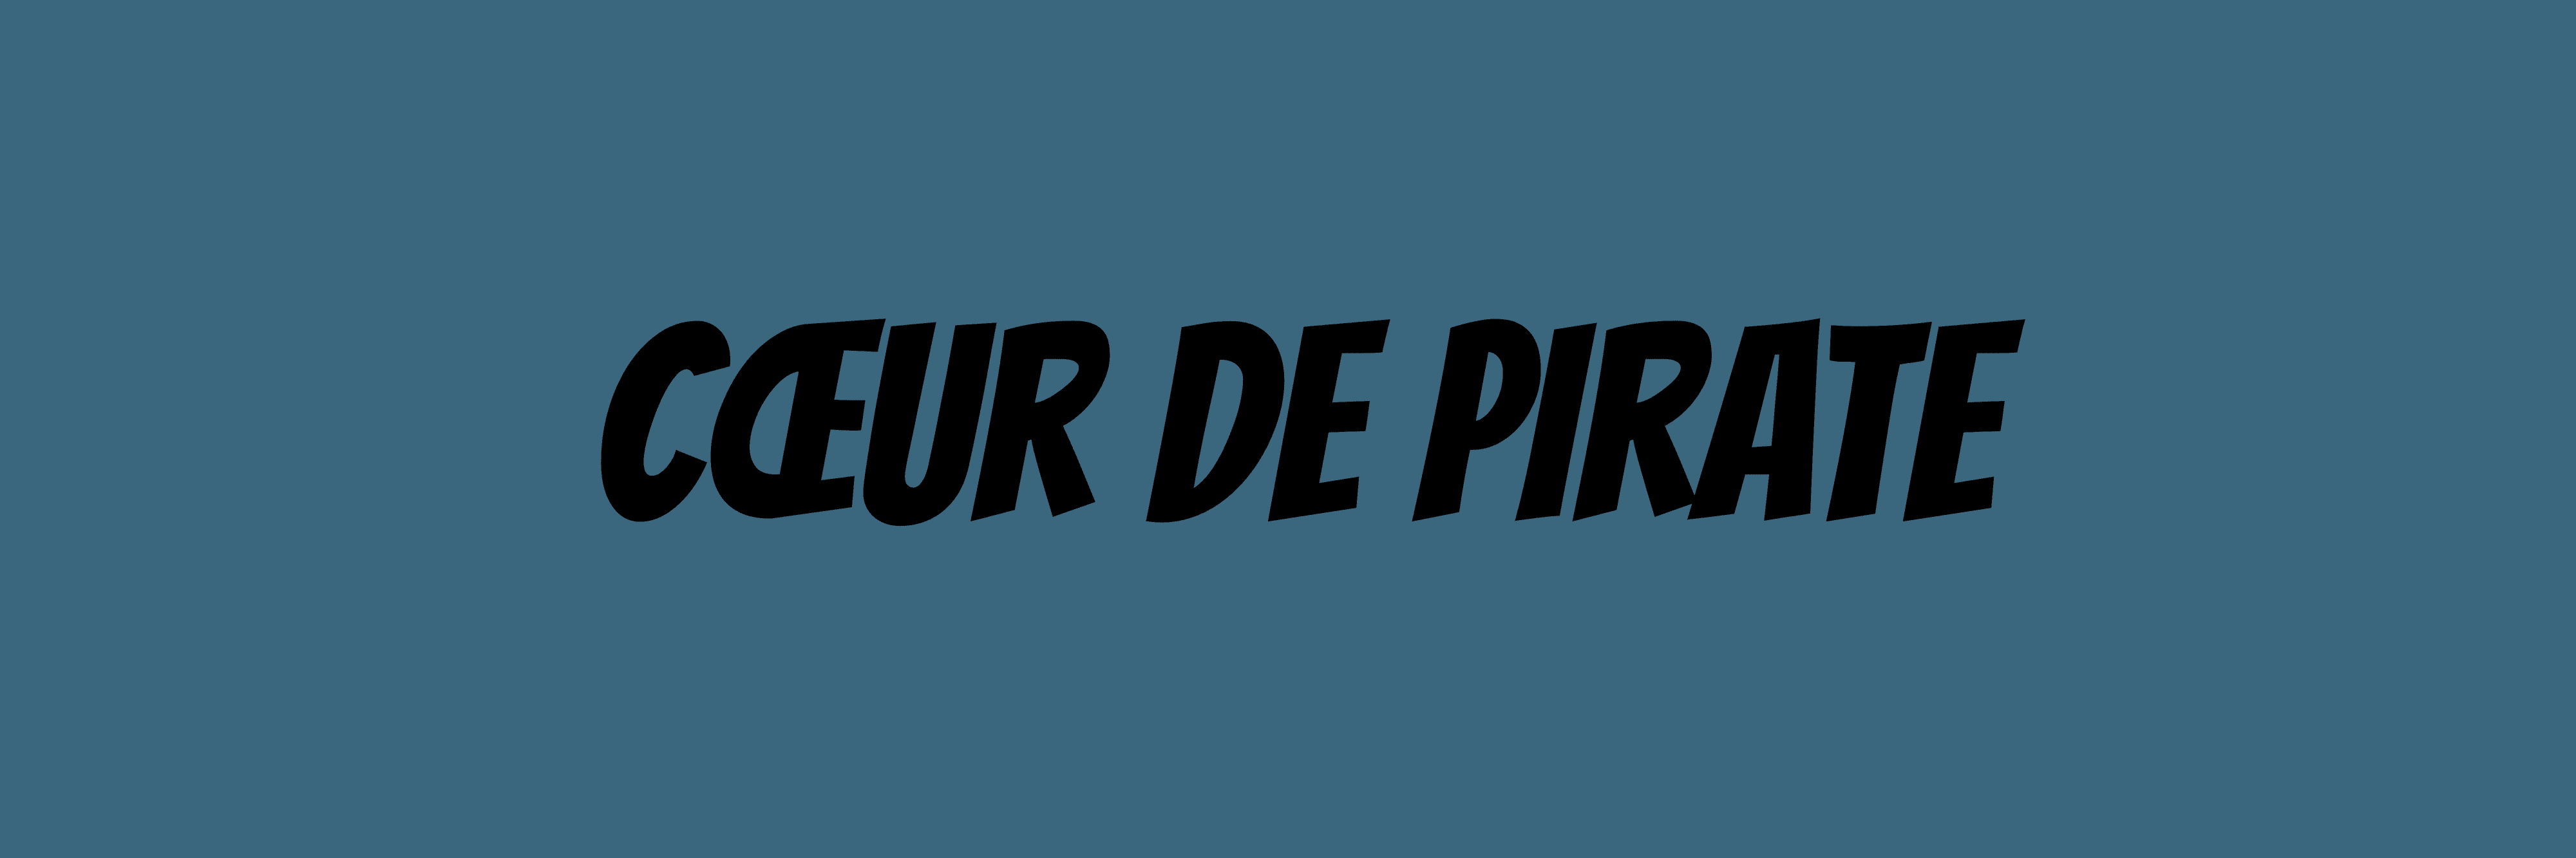 Coeur_de_pirate バナー